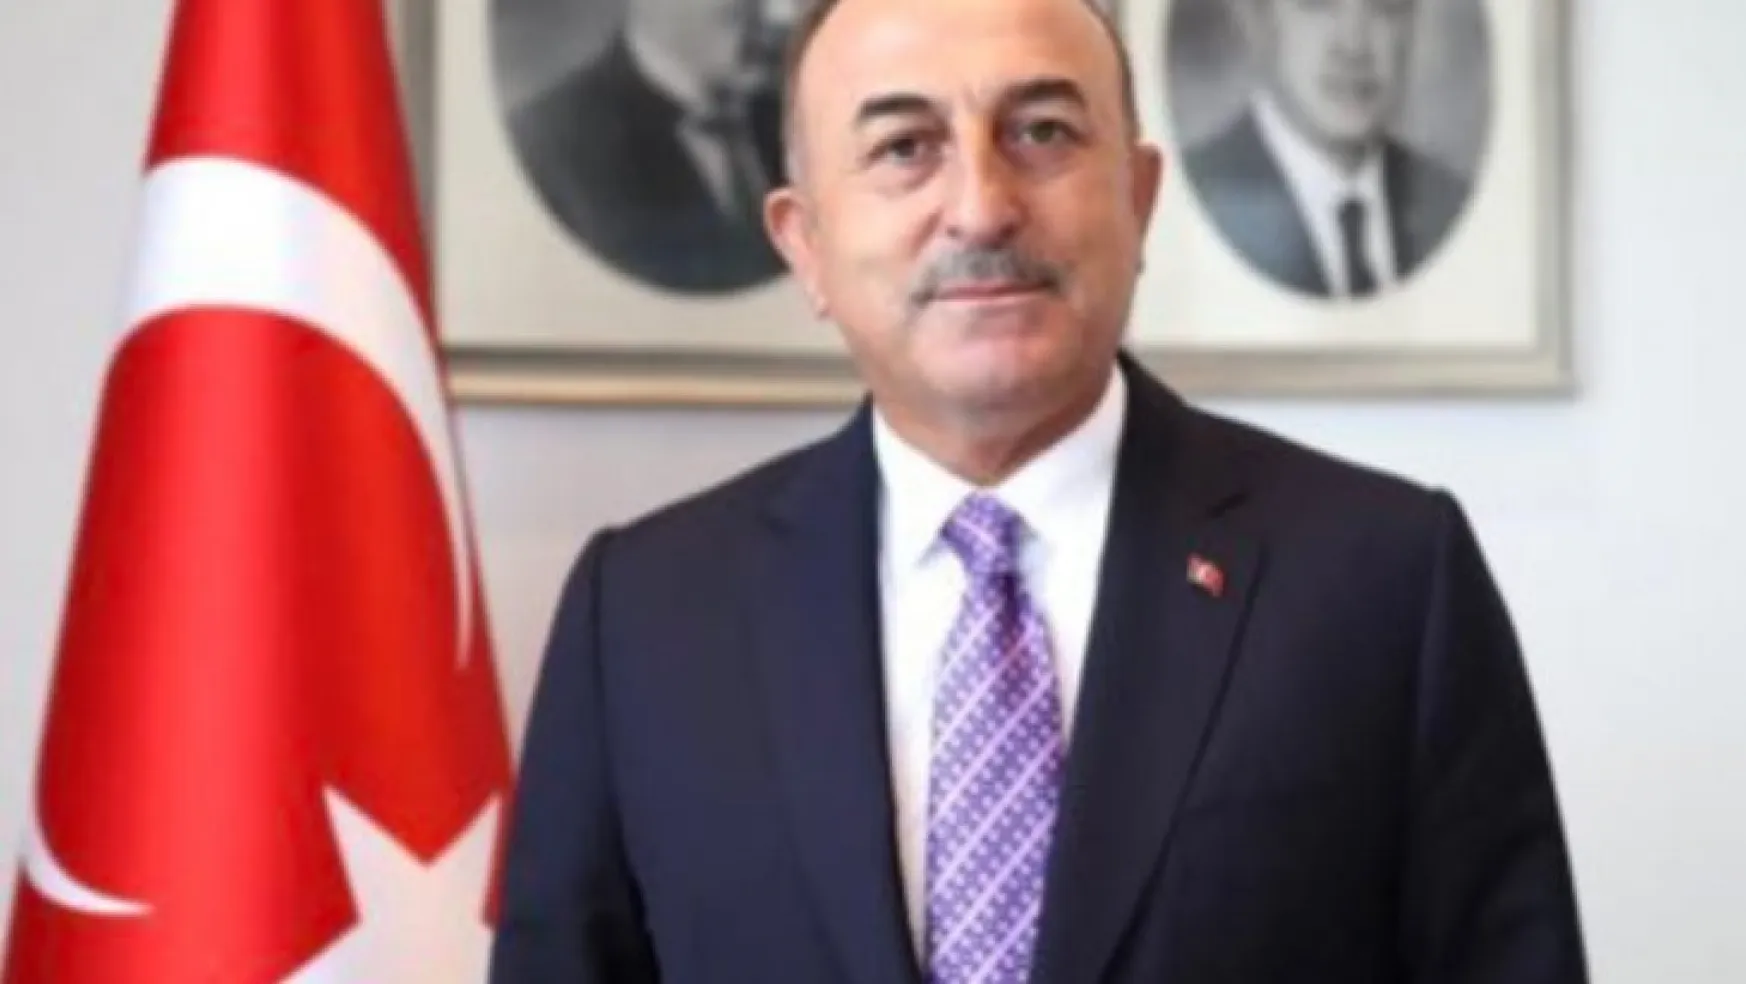 Bakan Çavuşoğlu Kayseri'ye gelecek